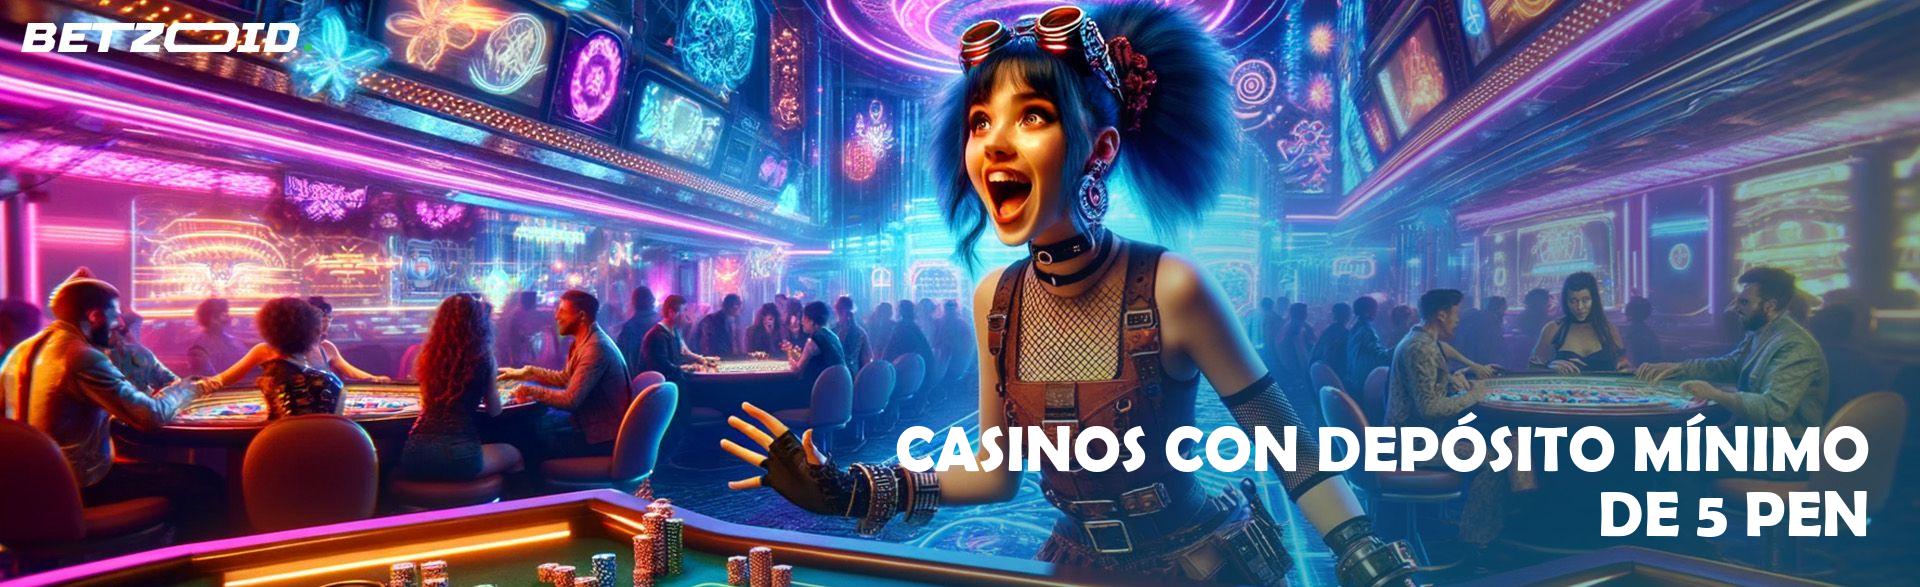 Casinos con Depósito Mínimo de 5 PEN.